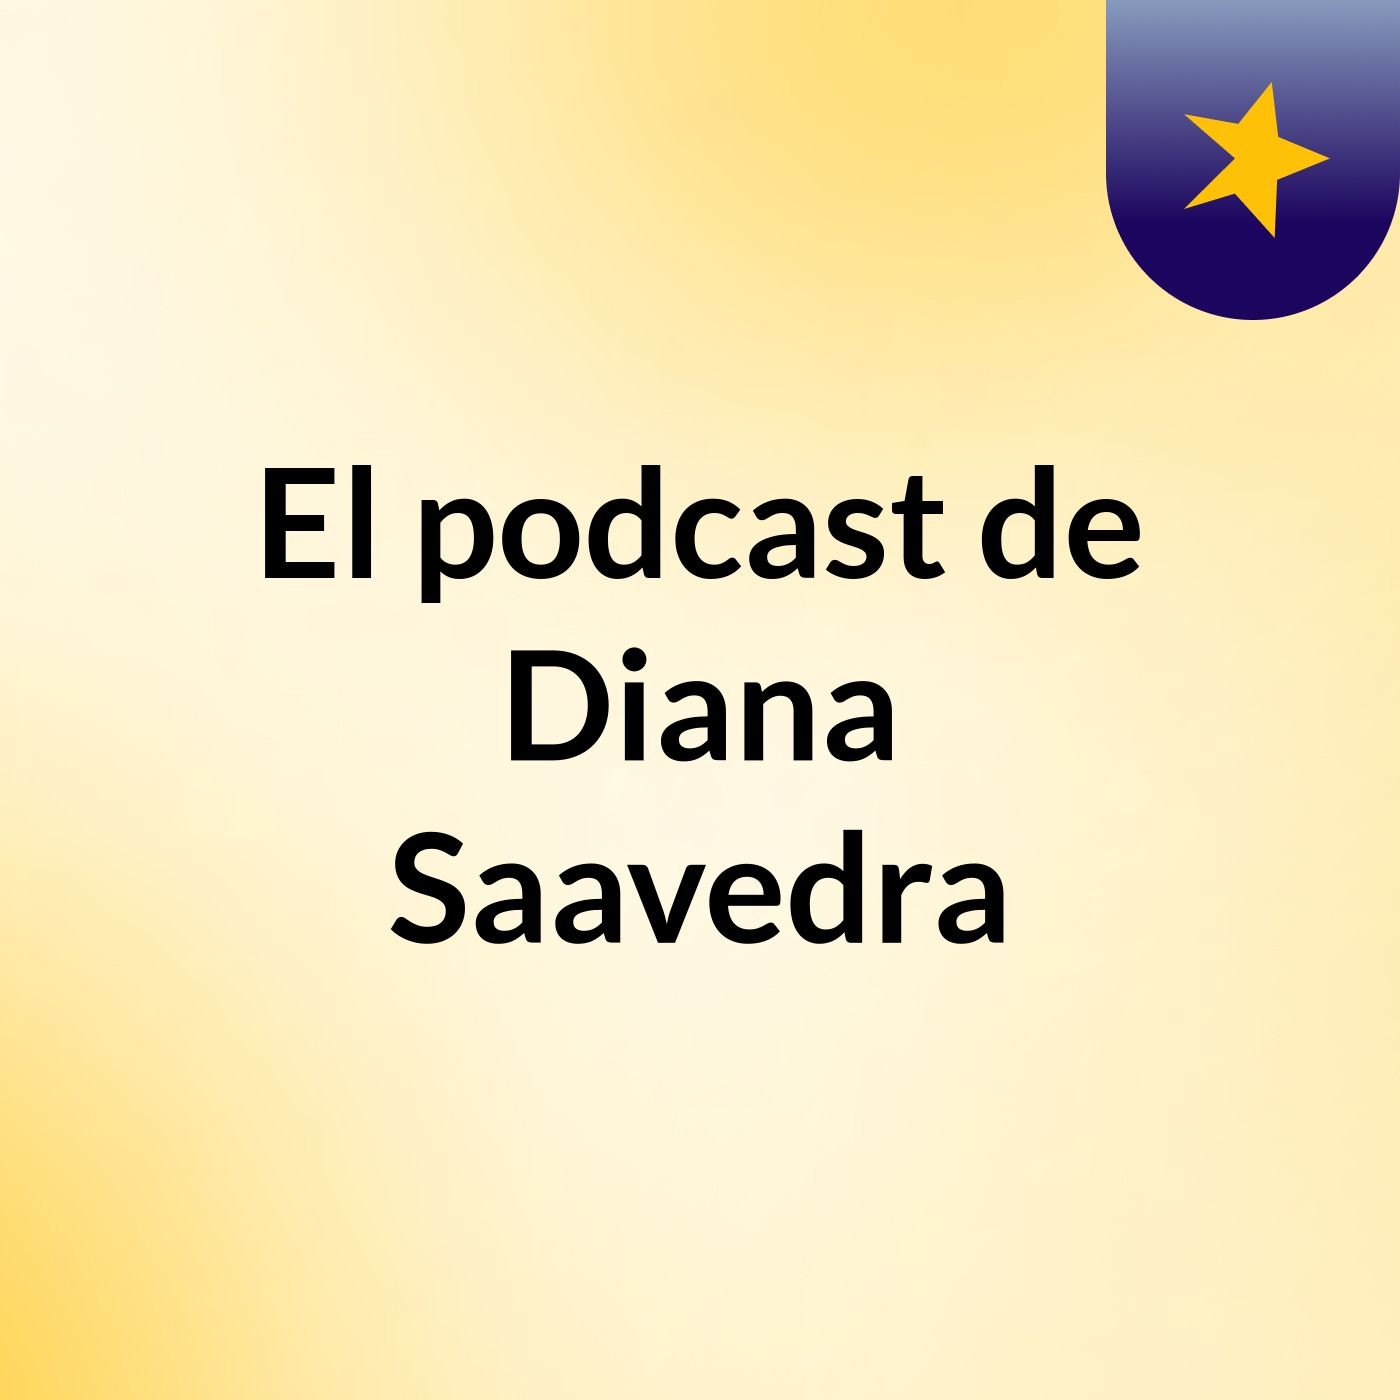 El podcast de Diana Saavedra